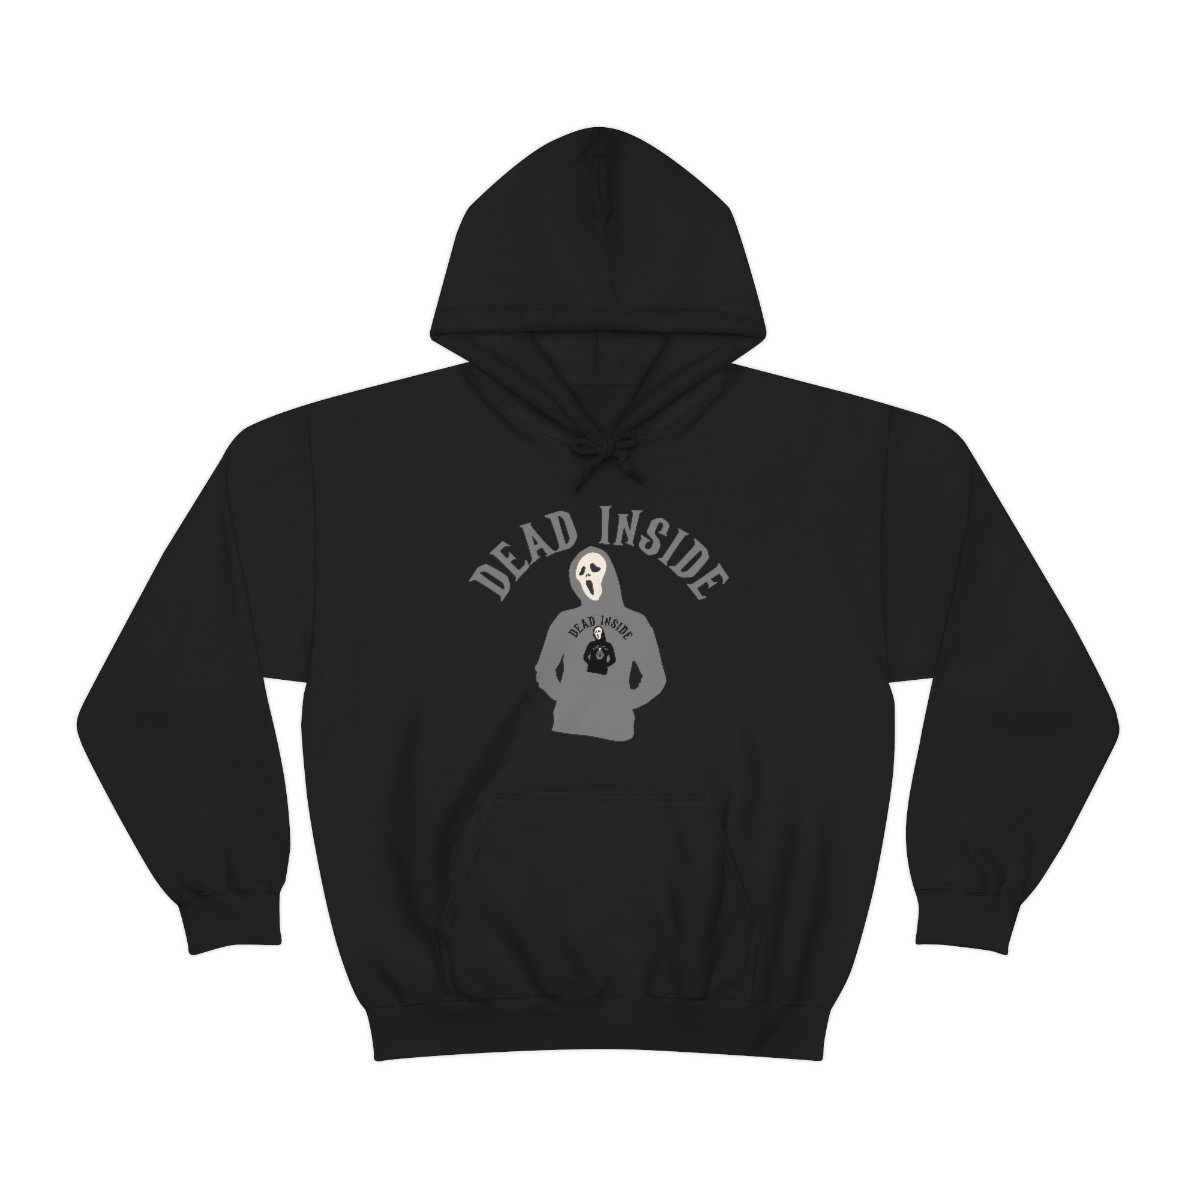 Dead Inside - Hoodie Wearing A Hoodie x4 - Unisex Heavy Blend Hooded Sweatshirt - Dark Colors